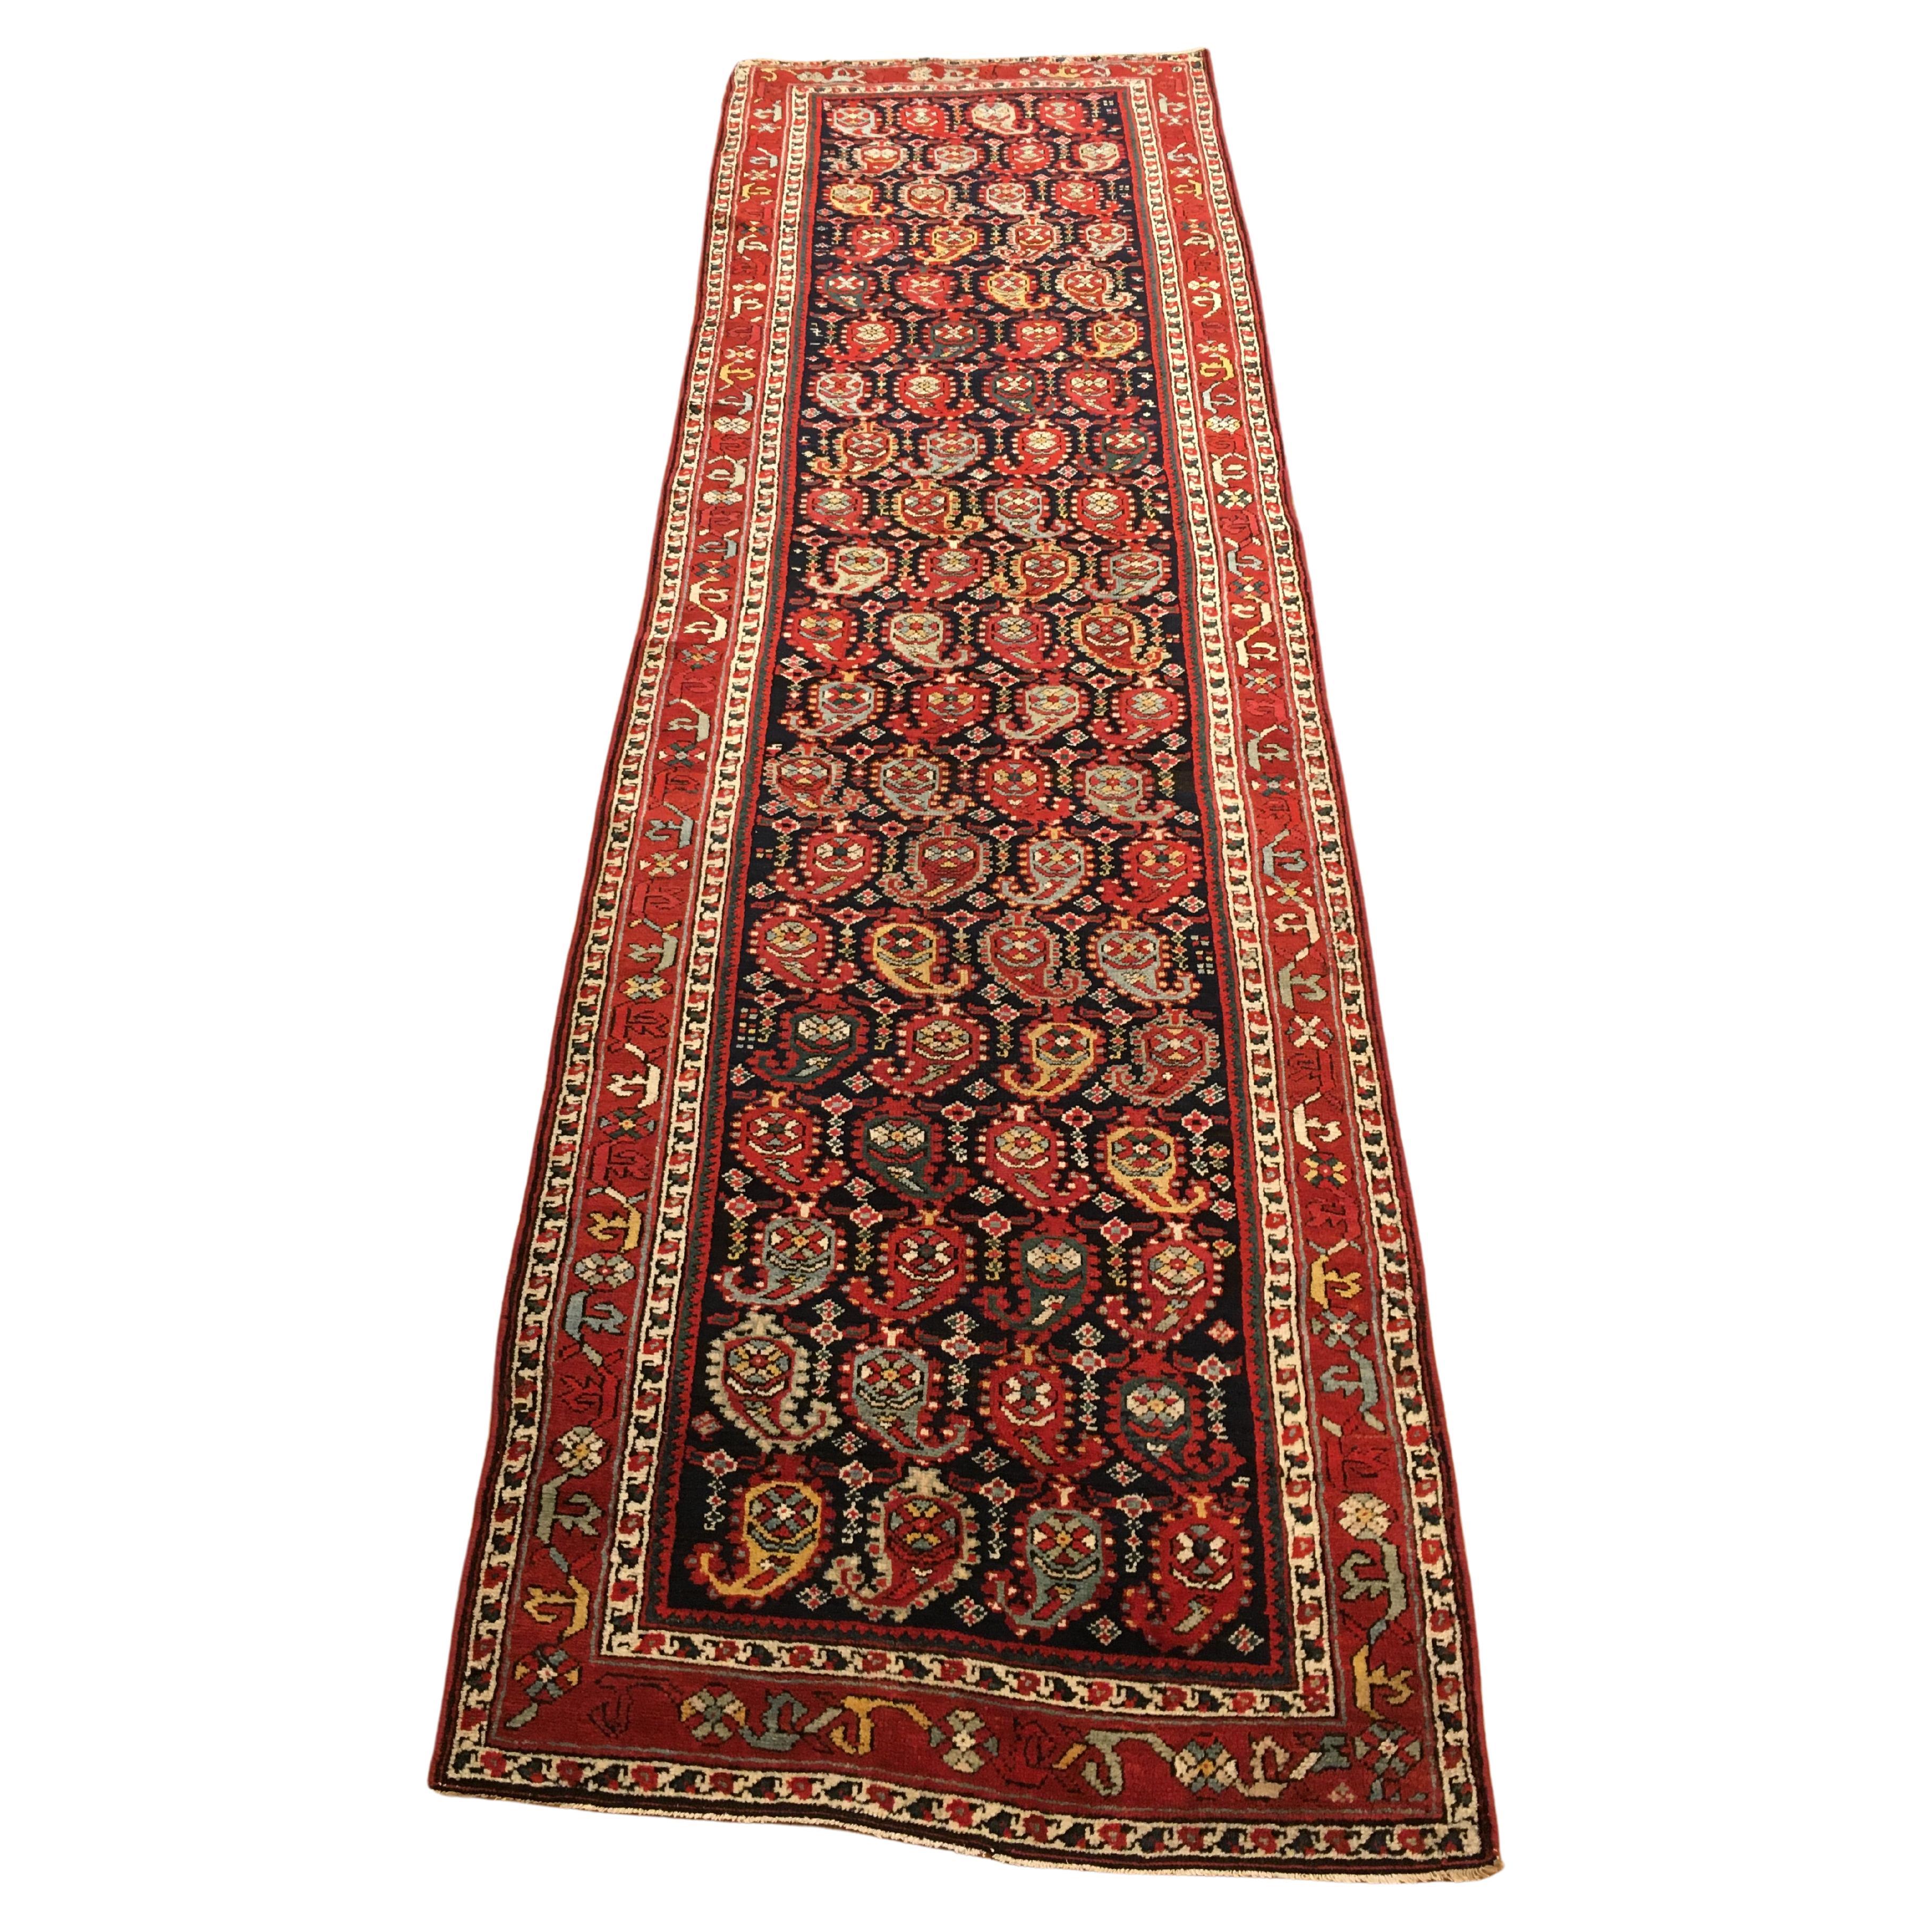 Antiker persischer orientalischer Teppich aus dem Nordwesten Persiens, Läufergröße, mit wiederkehrenden Paisley-Motiven